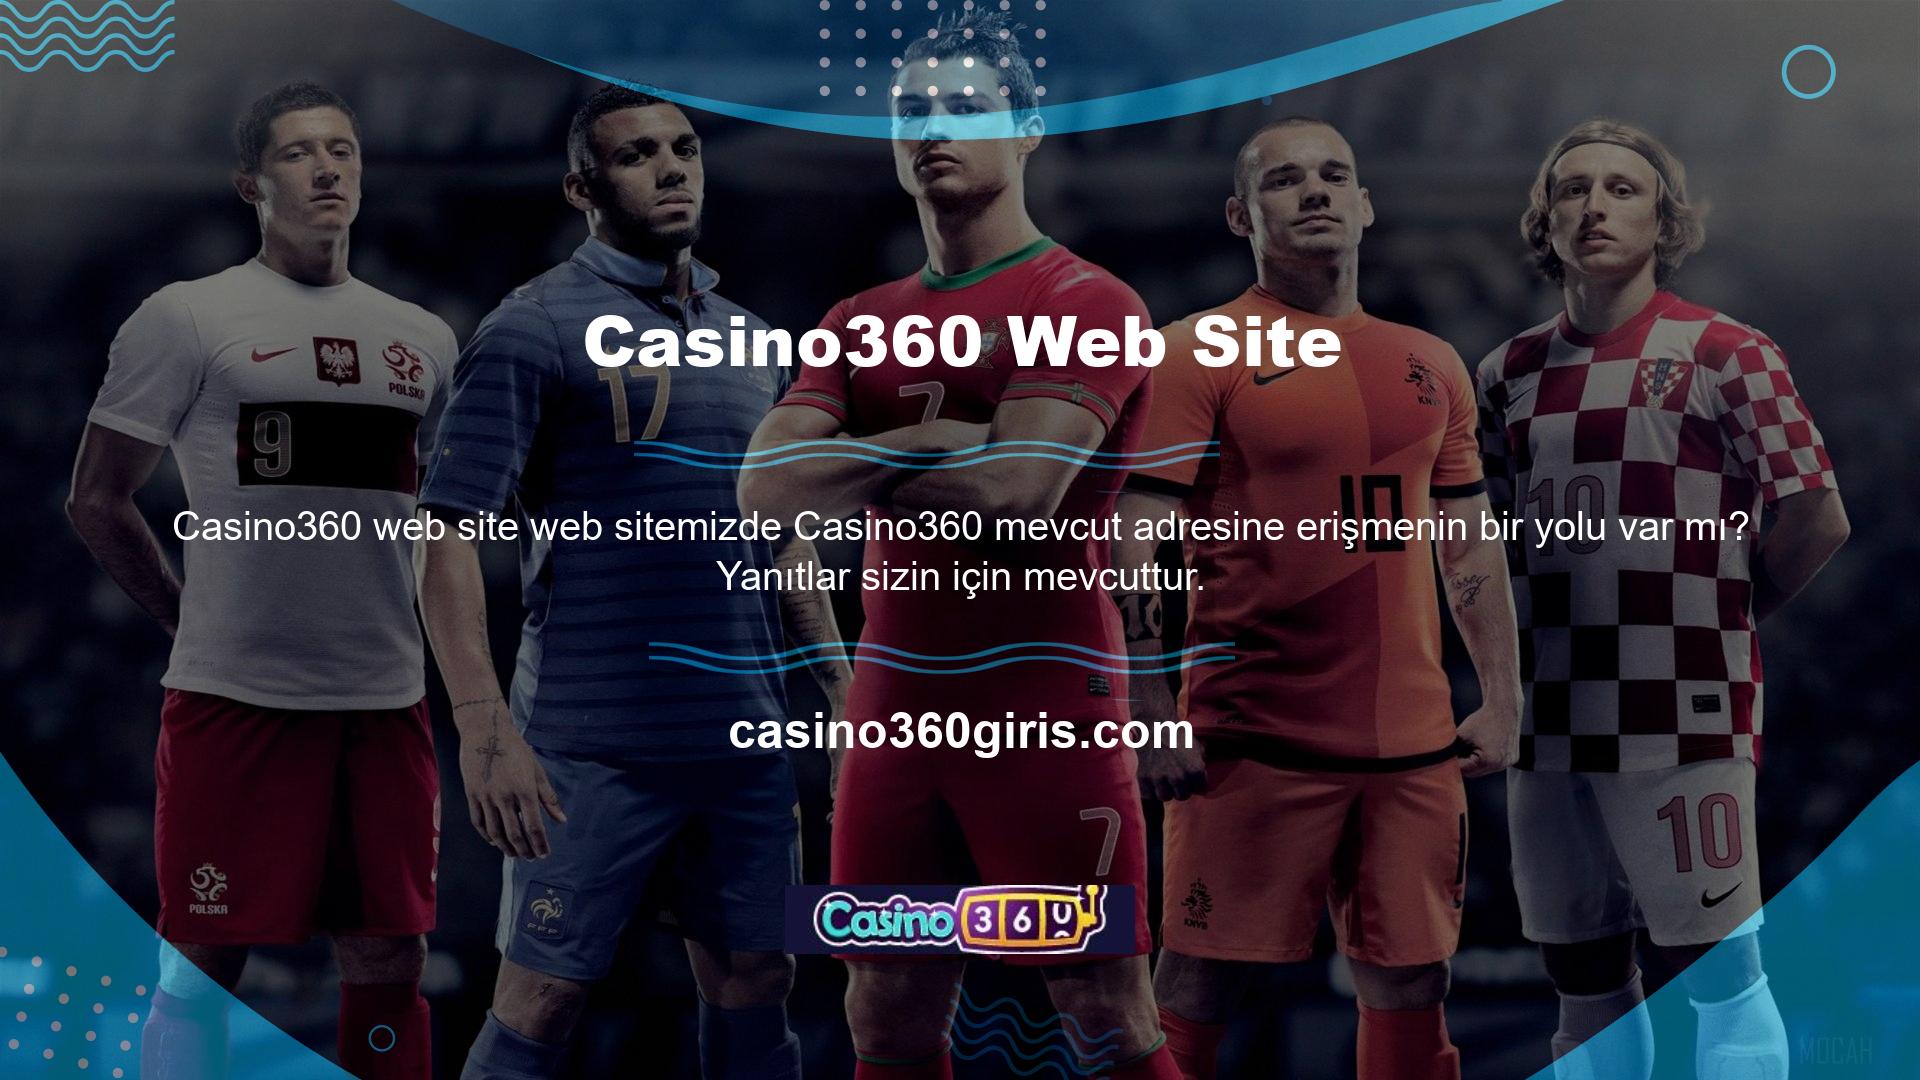 Web sitemiz, bağlantımıza tıklayarak Casino360 web sitesi için yeni giriş adresinize hızlı bir şekilde erişmenizi sağlayacaktır